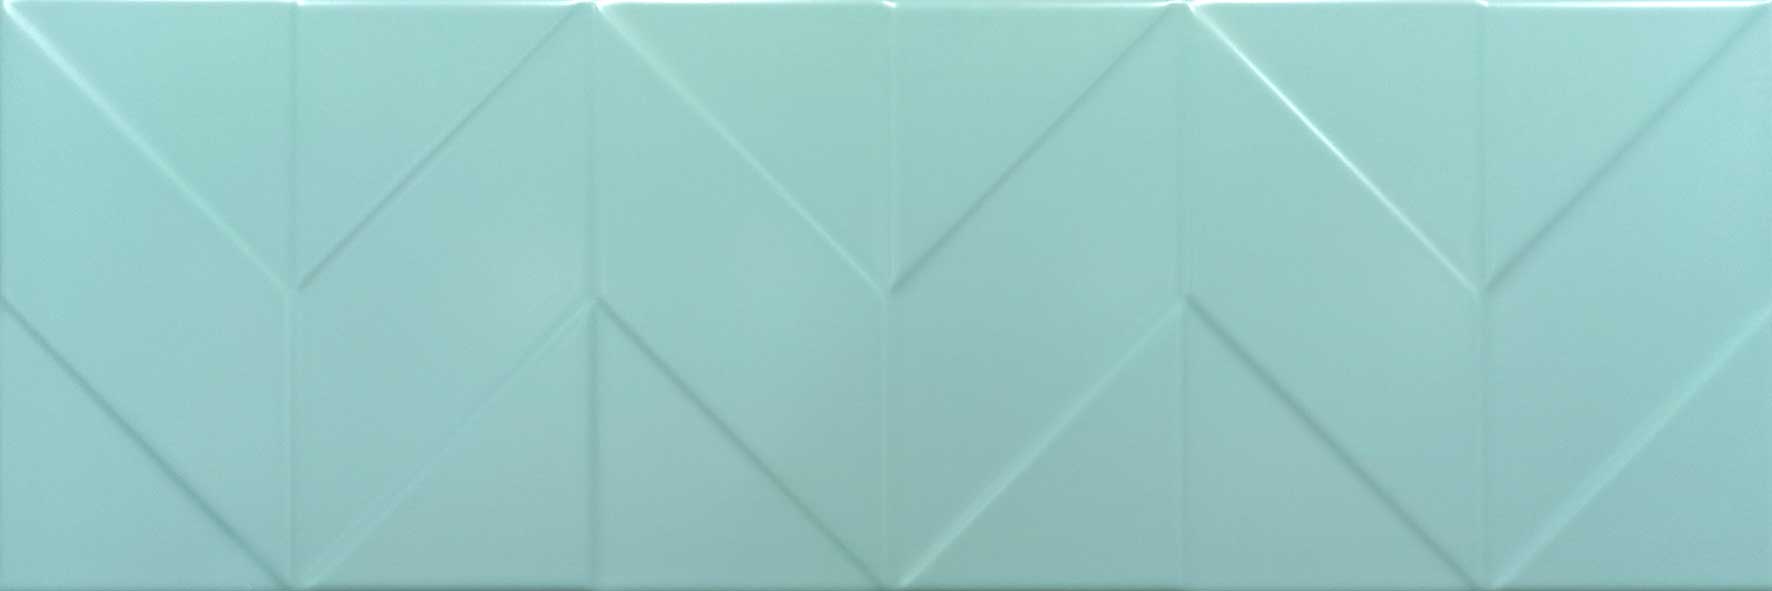 Керамическая плитка Керамин Танага 4Д Голубой, цвет голубой, поверхность сатинированная, прямоугольник, 250x750